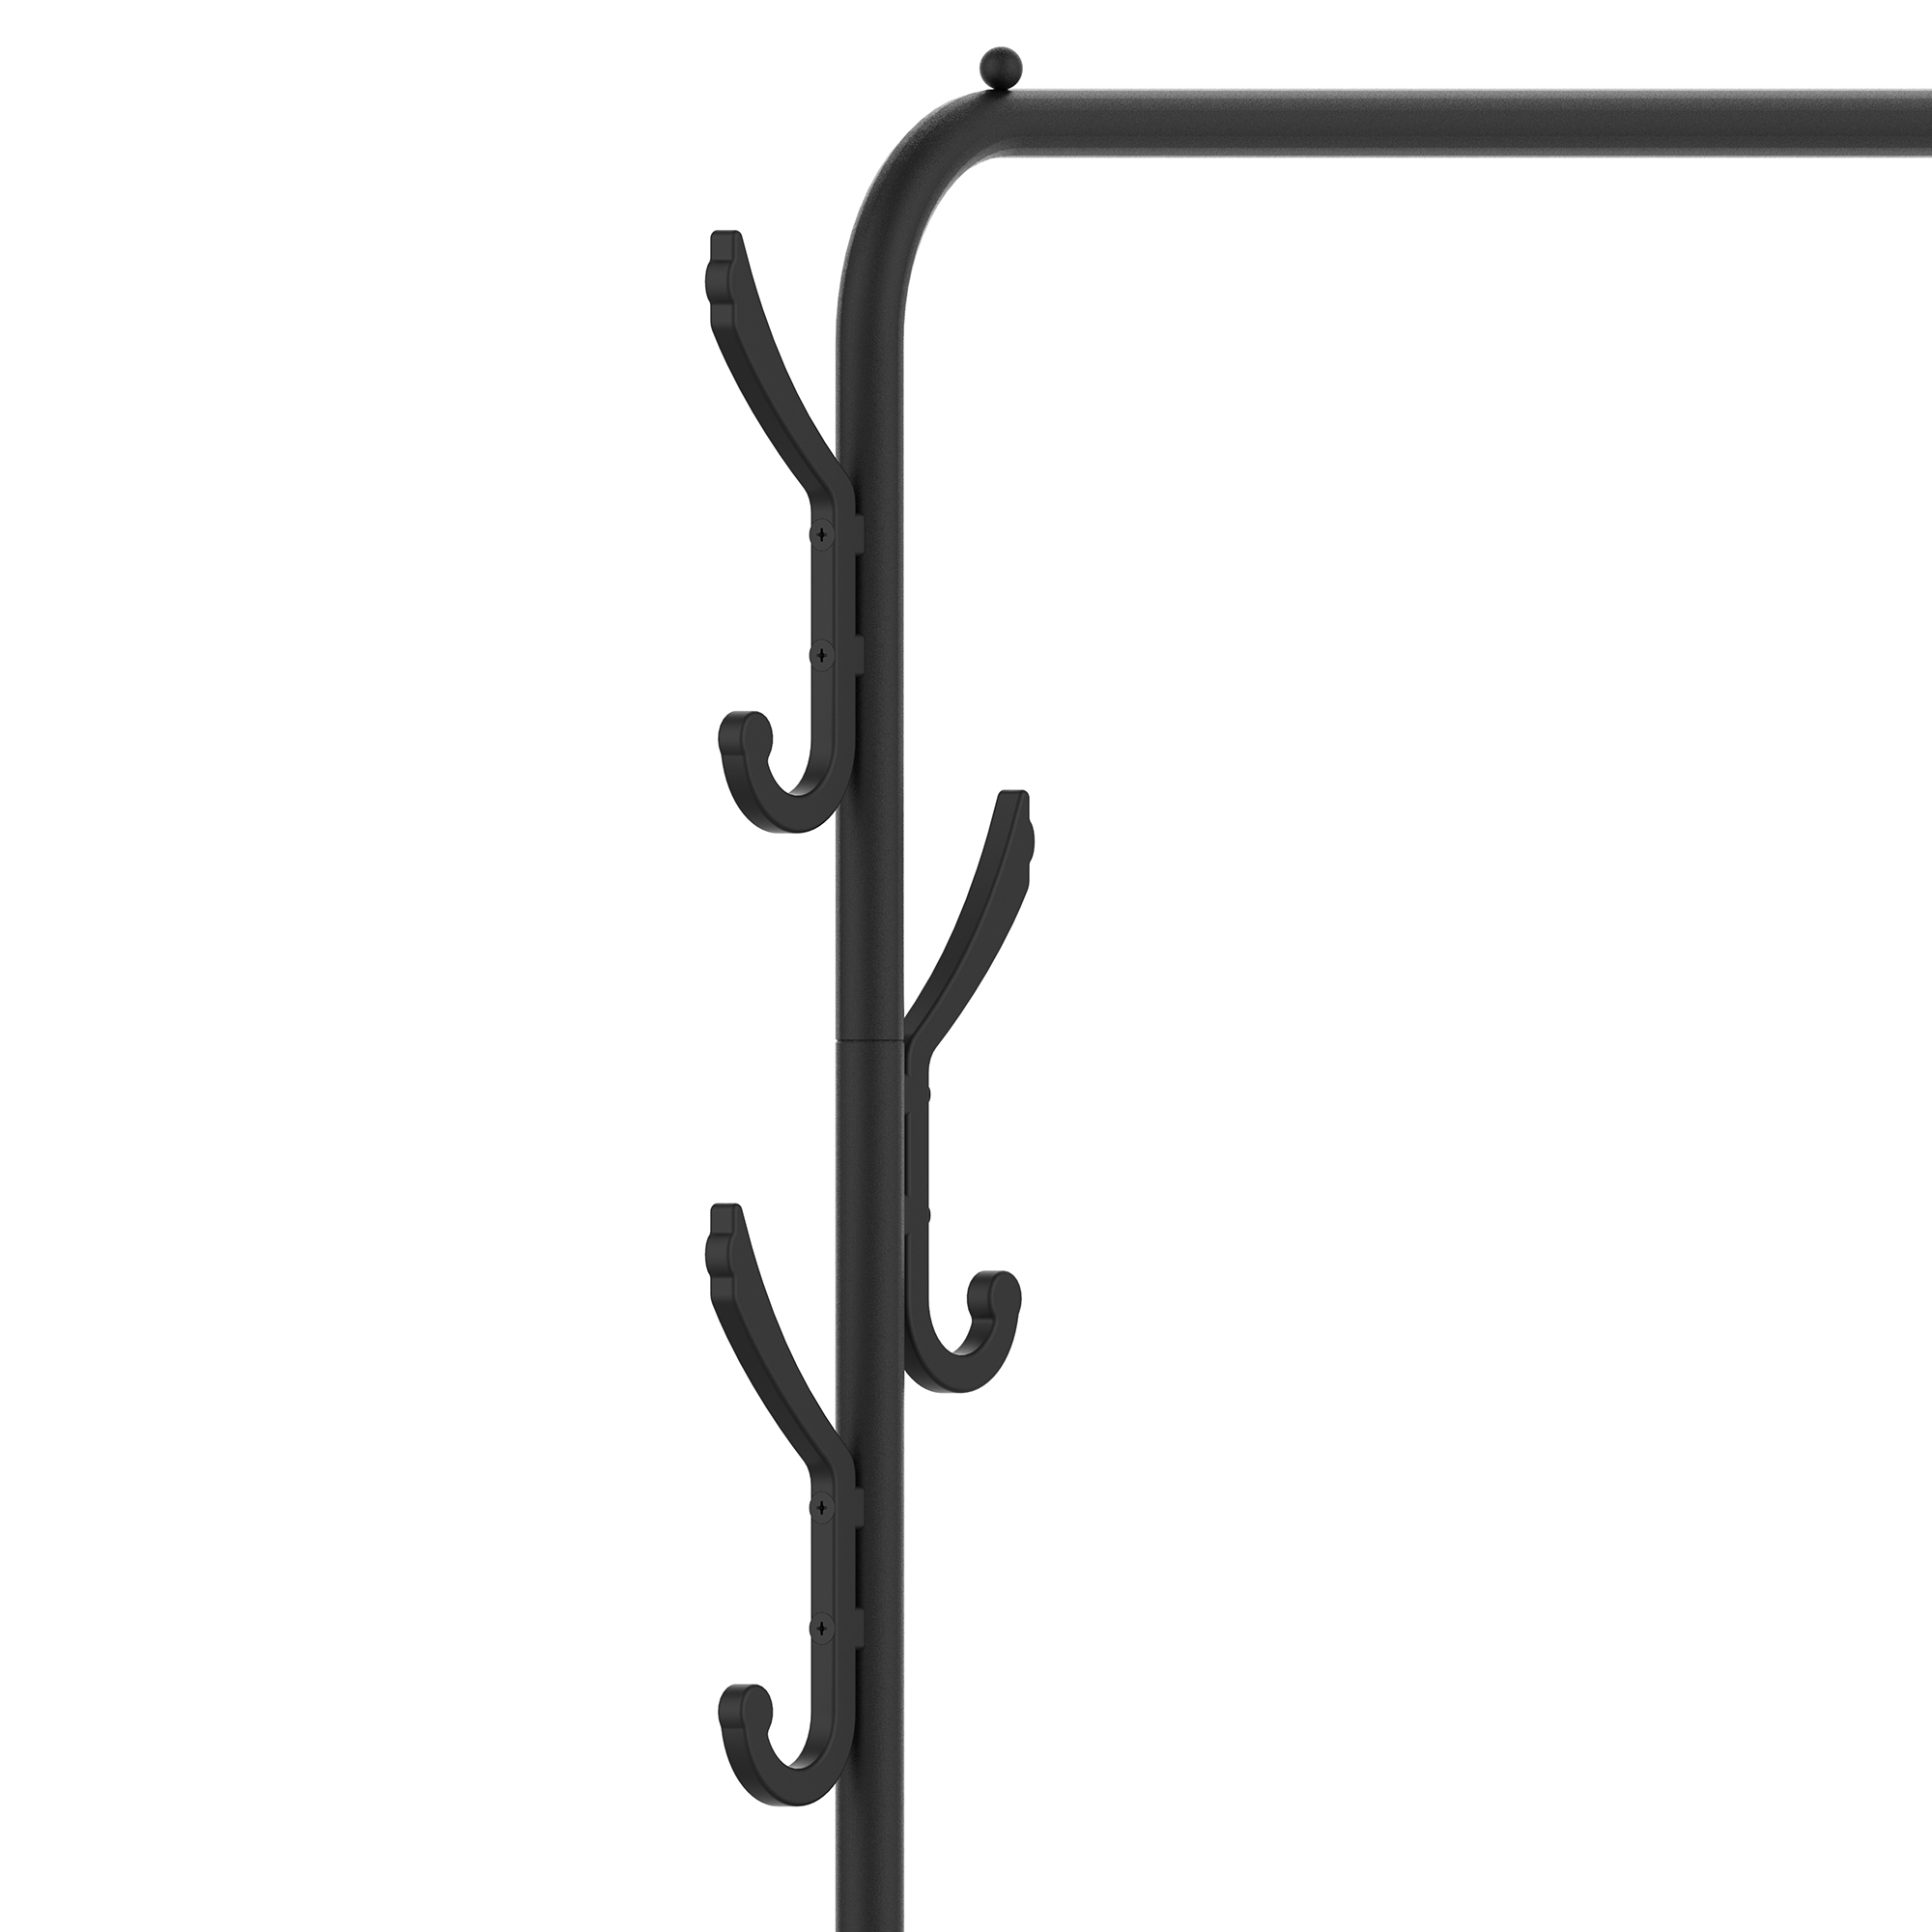 Single Metal Garment Rack with Shelves